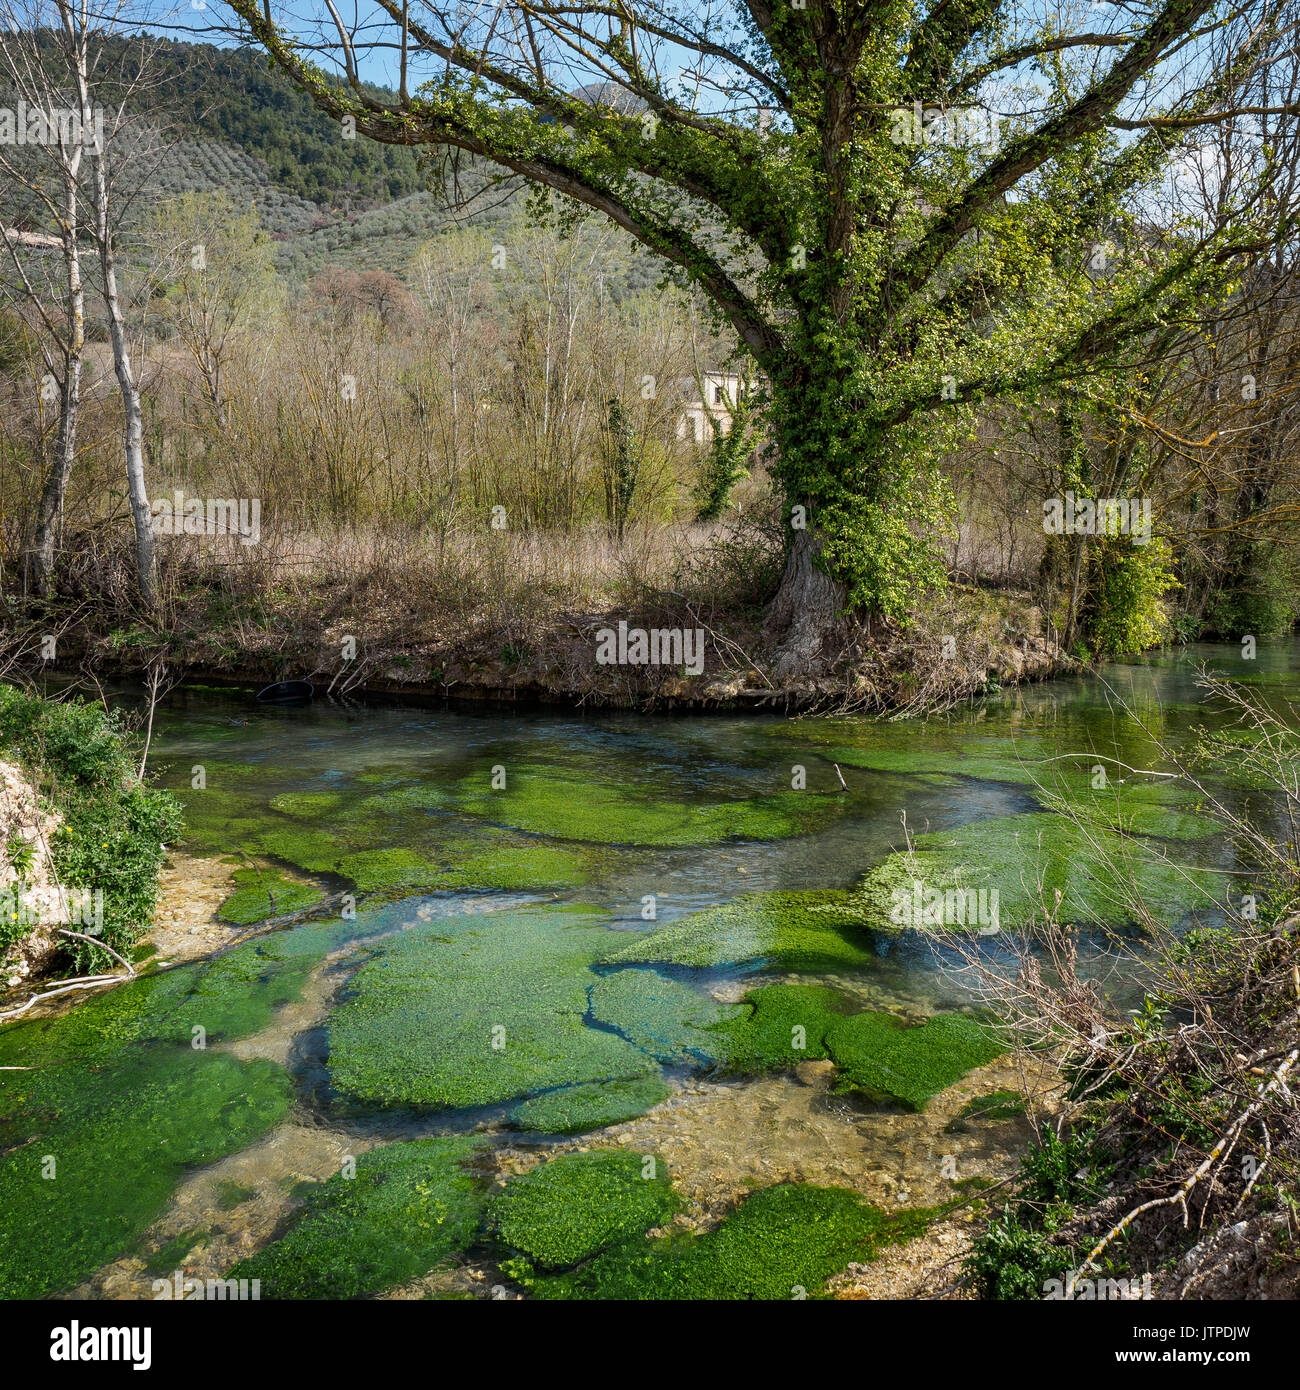 Clitunno River in der Nähe der Stadt von Campello in Umbrien (Italien). Stockfoto